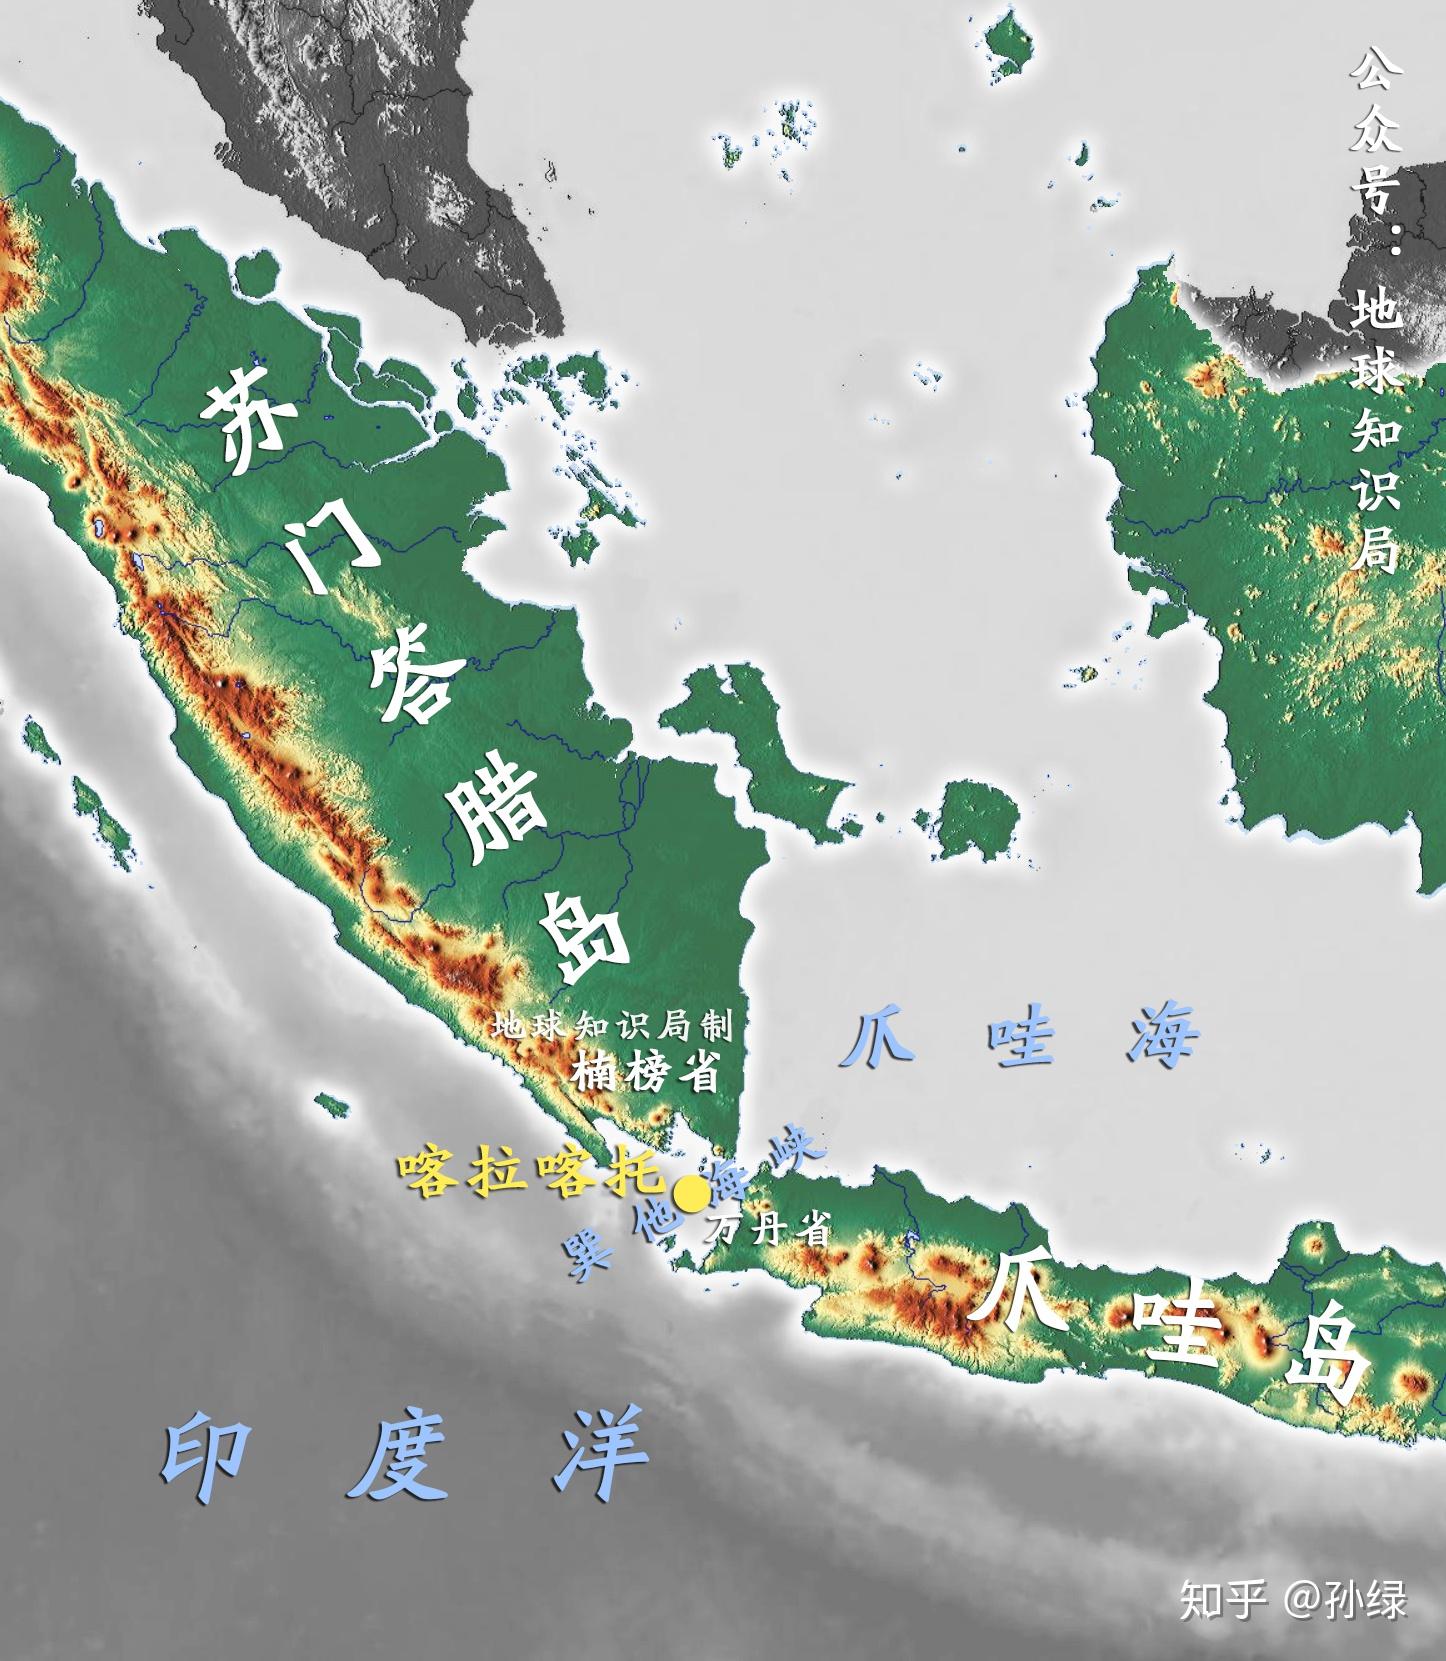 印度尼西亚行政区域图_印度尼西亚地图查询